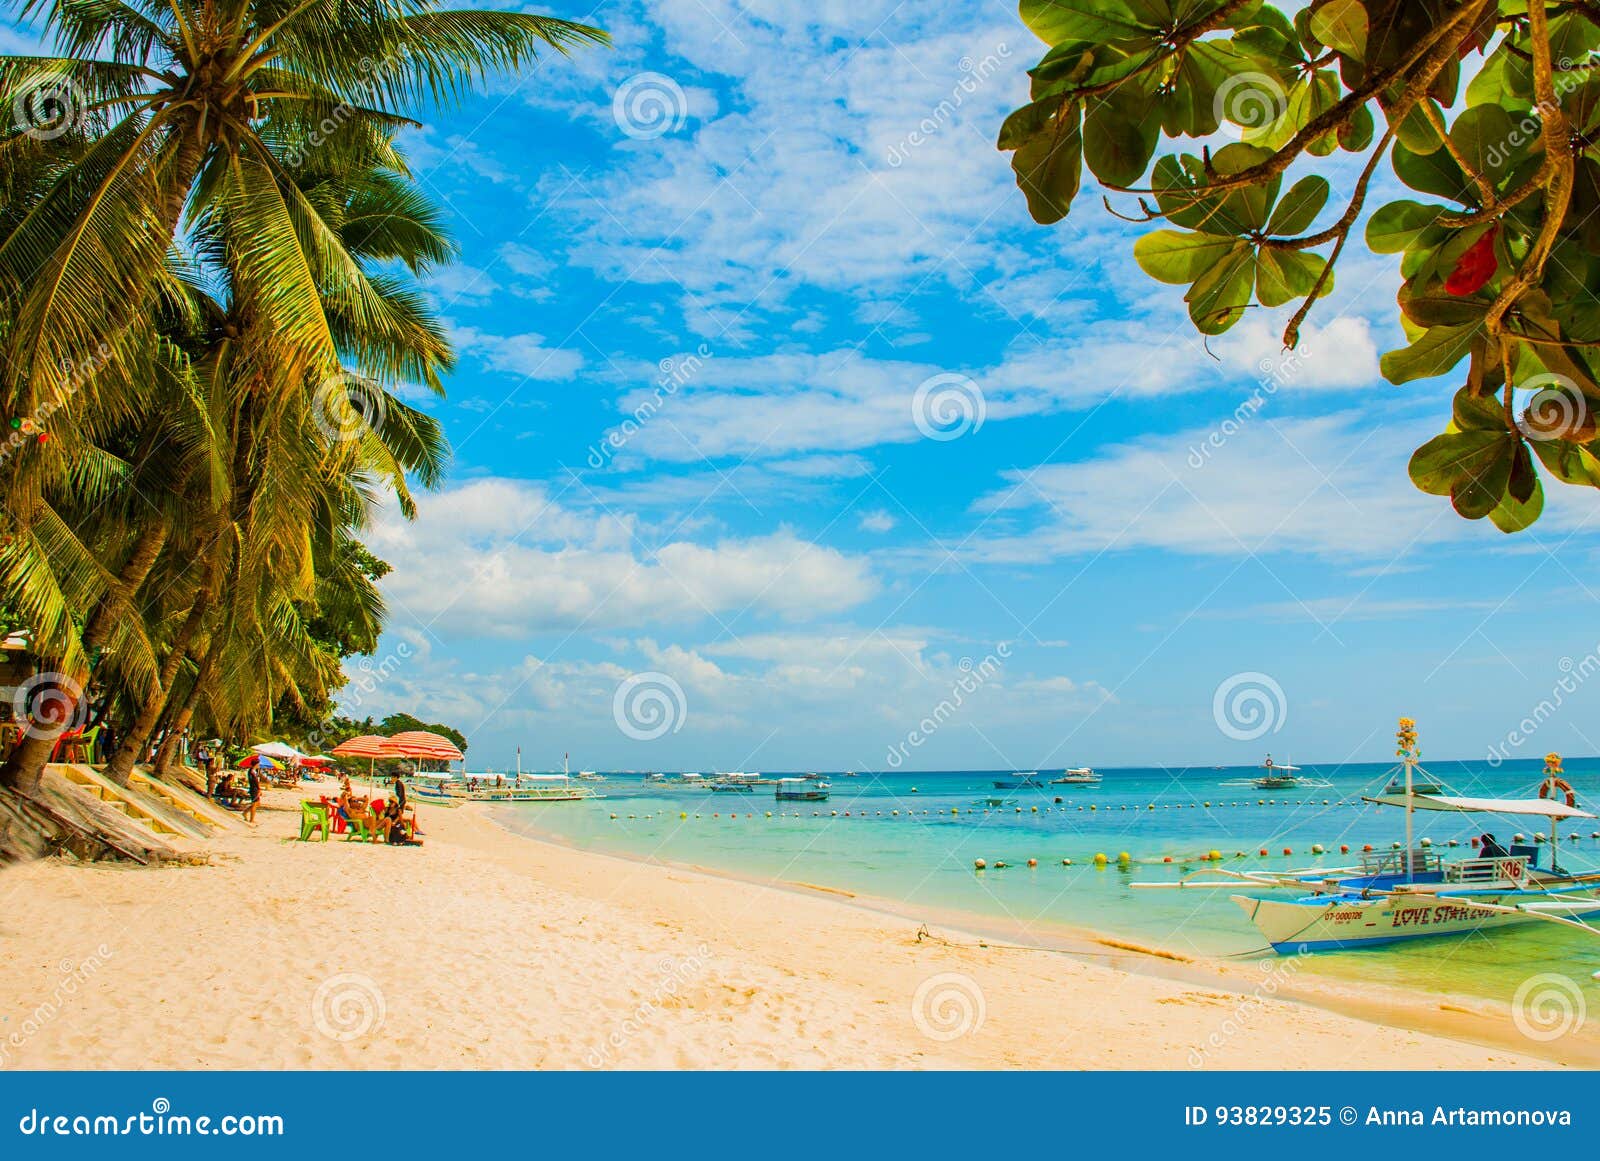 菲律宾保和岛度假旅游风景图片素材-编号15231145-图行天下